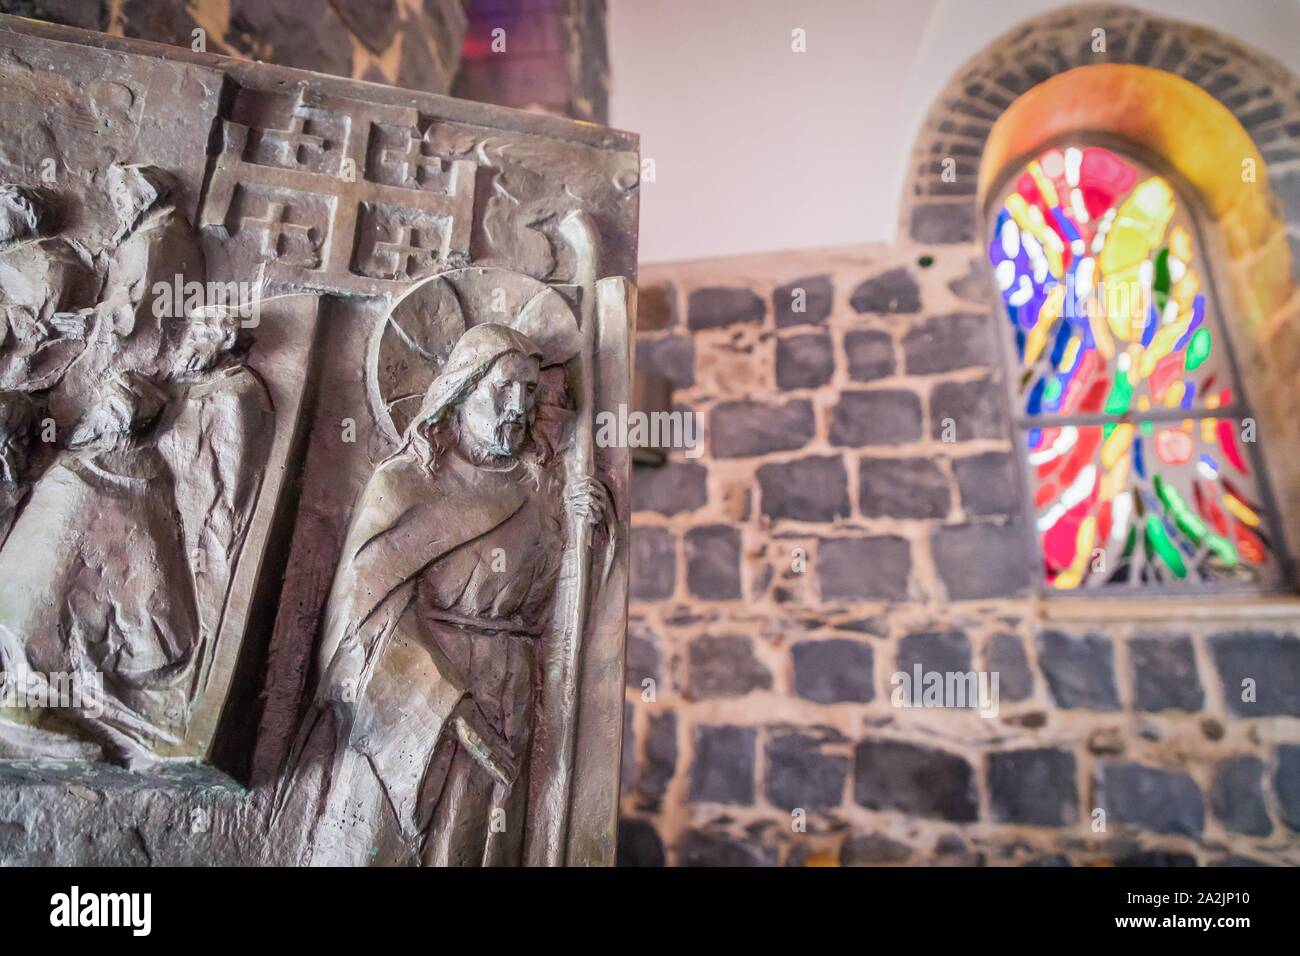 L'église de la primauté de Saint Pierre. Église franciscaine située à Tabgha, Israël. Portes et fenêtres à vitraux, détails Banque D'Images